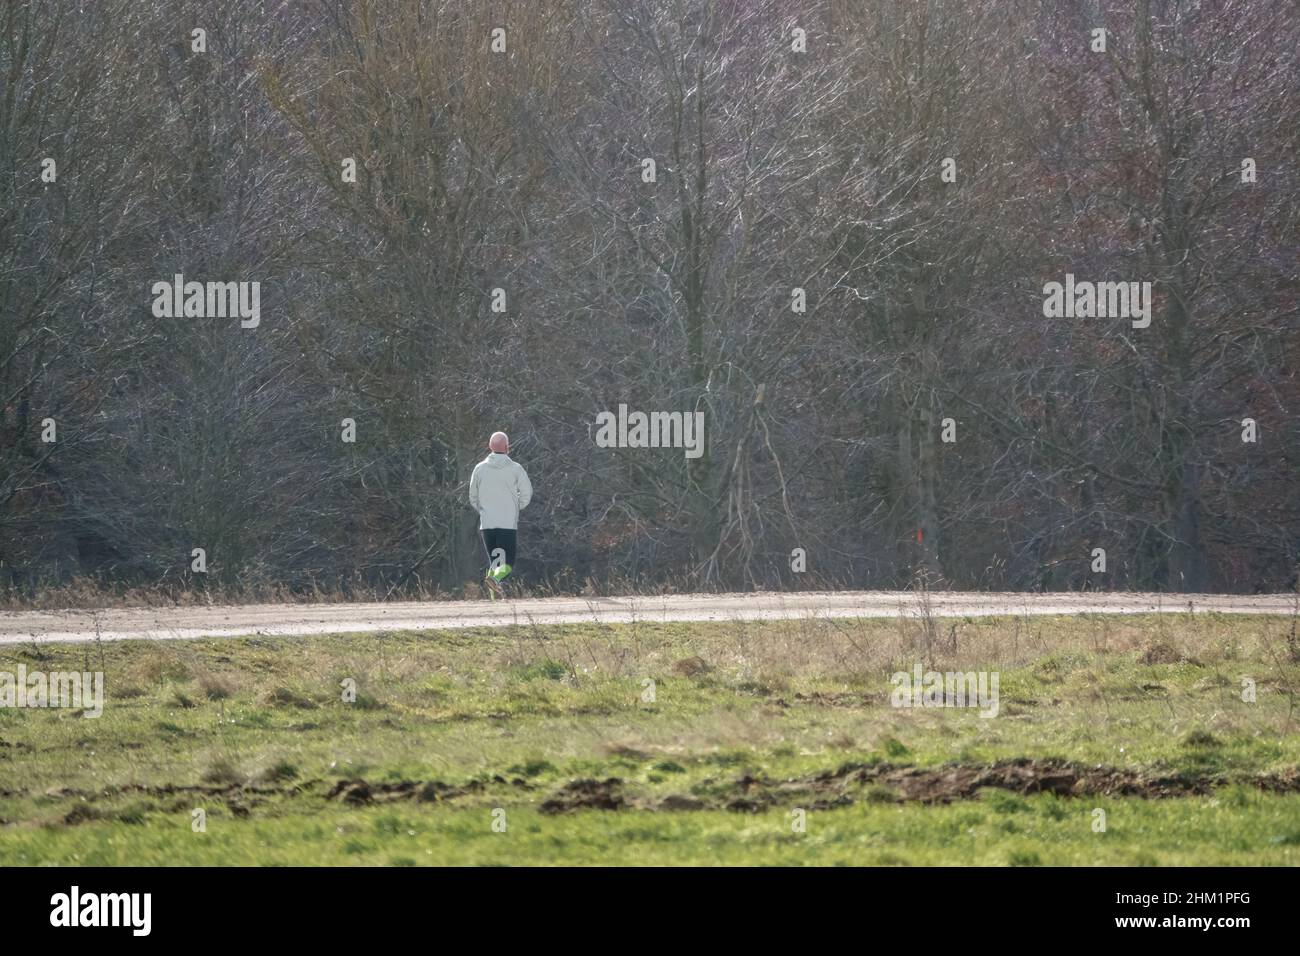 homme portant des chaussettes haute visibilité qui jogging sur une piste non faite Banque D'Images